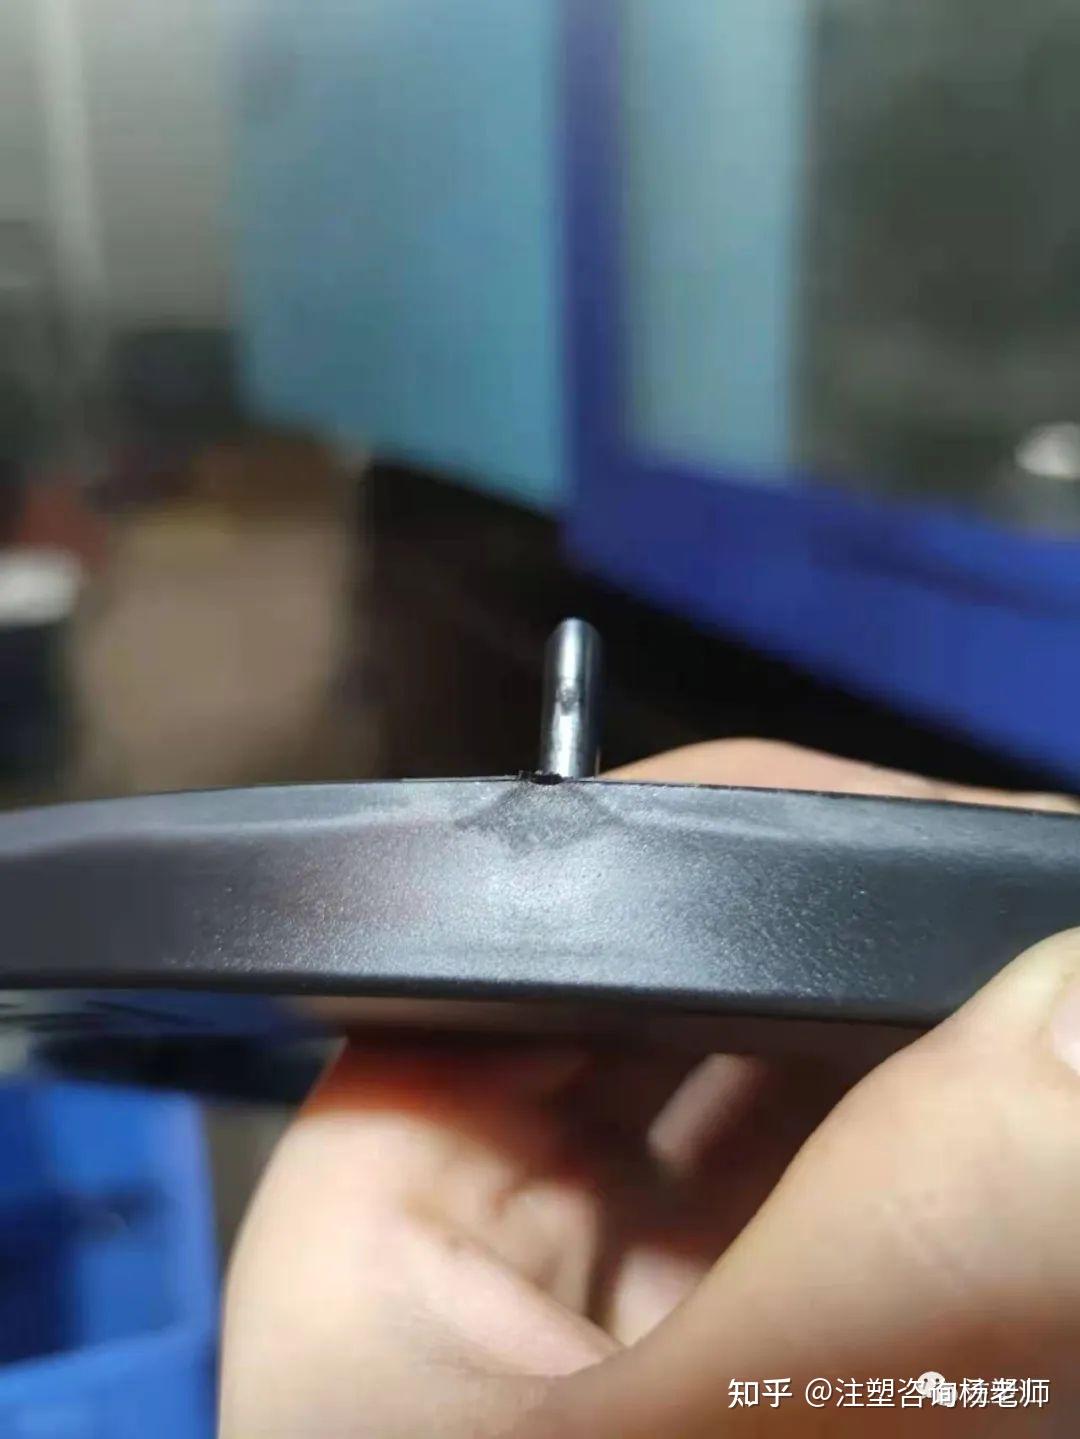 特斯拉 Model 3 鋁合金凹痕修復案例 – TESLAGURU